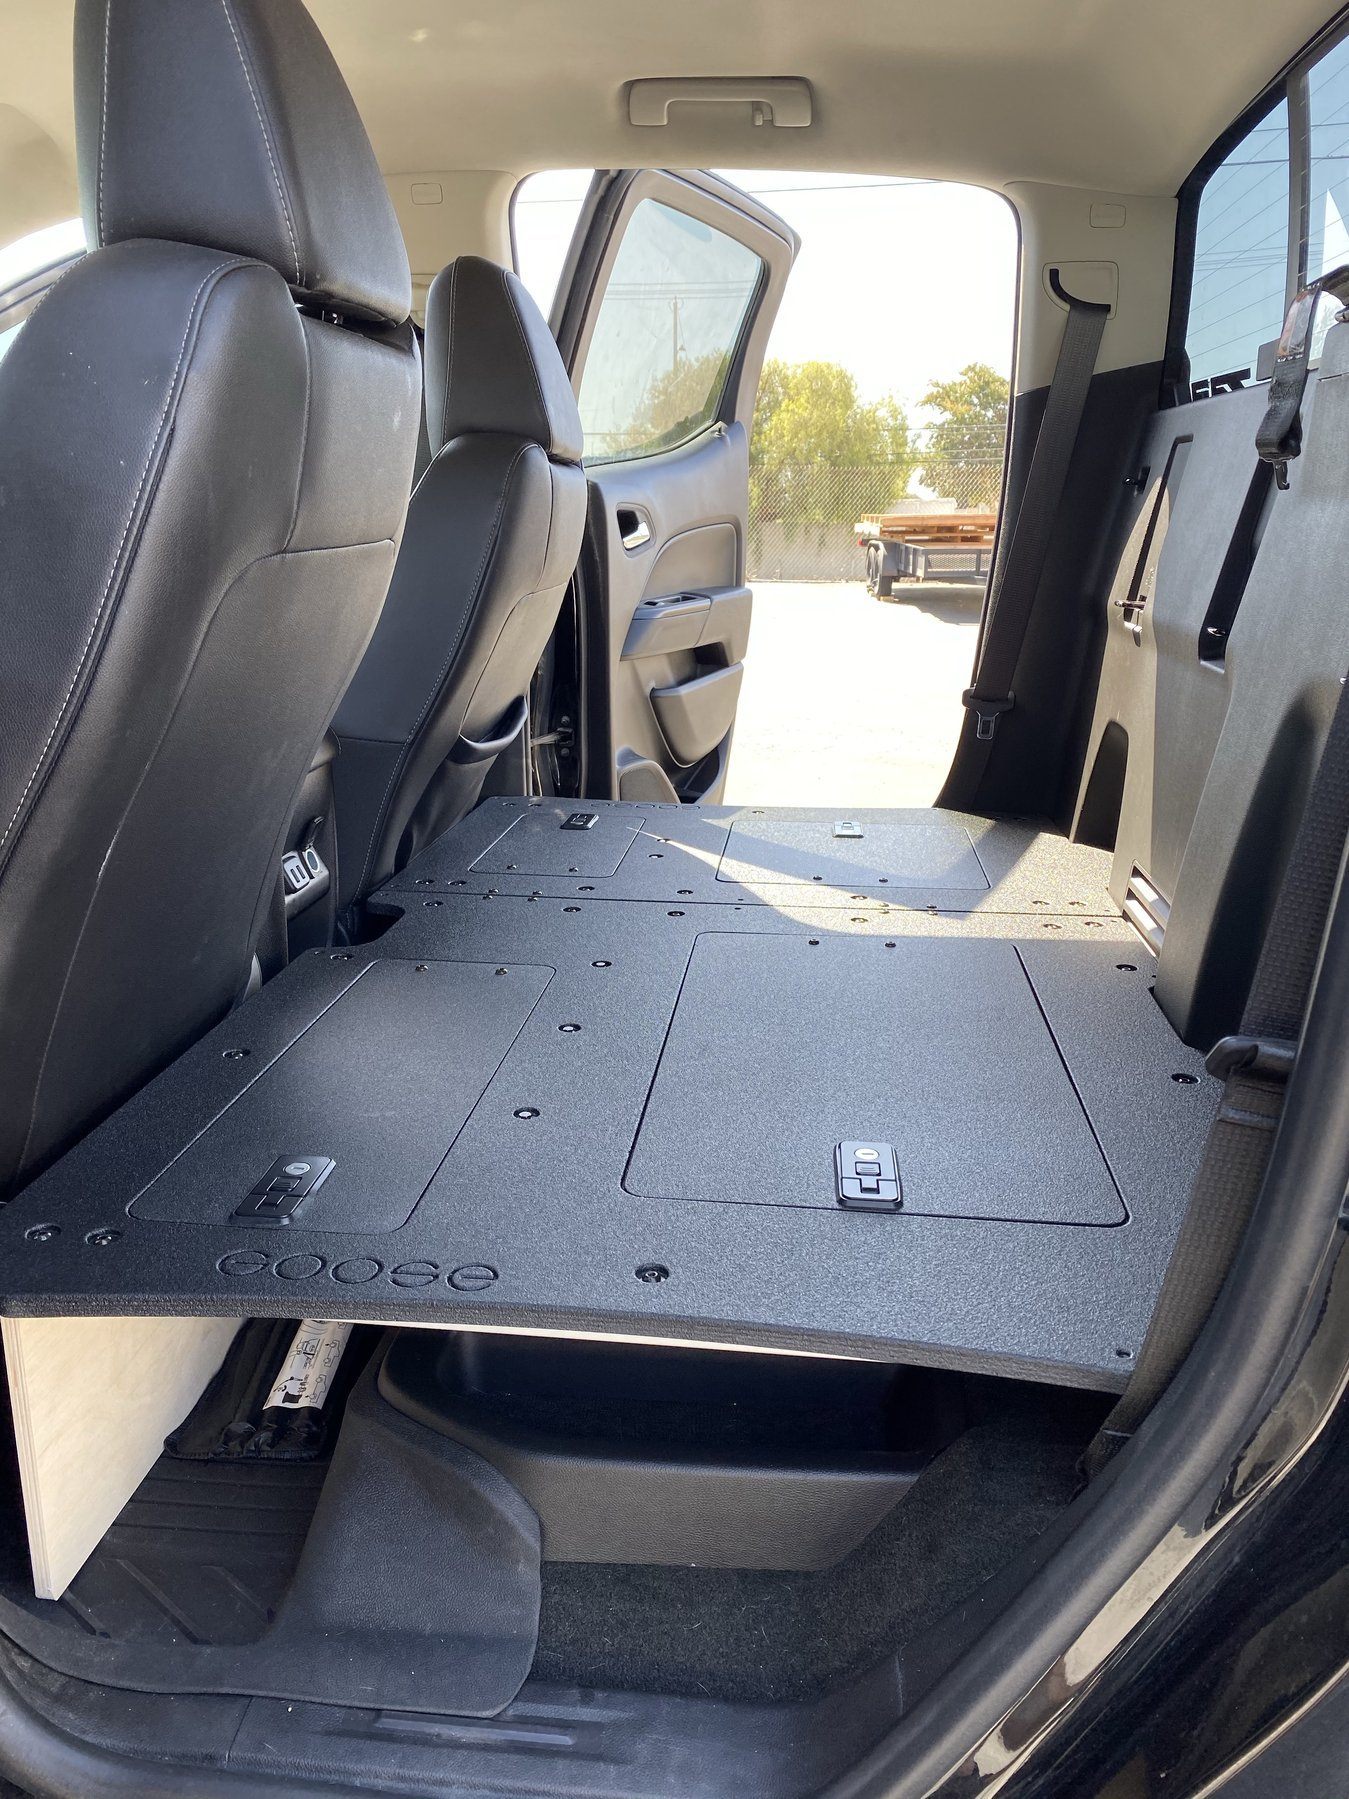 '15-22 Chevy Colorado (2nd Gen) Rear Seat Delete Interior Accessoires Goose Gear (side view)